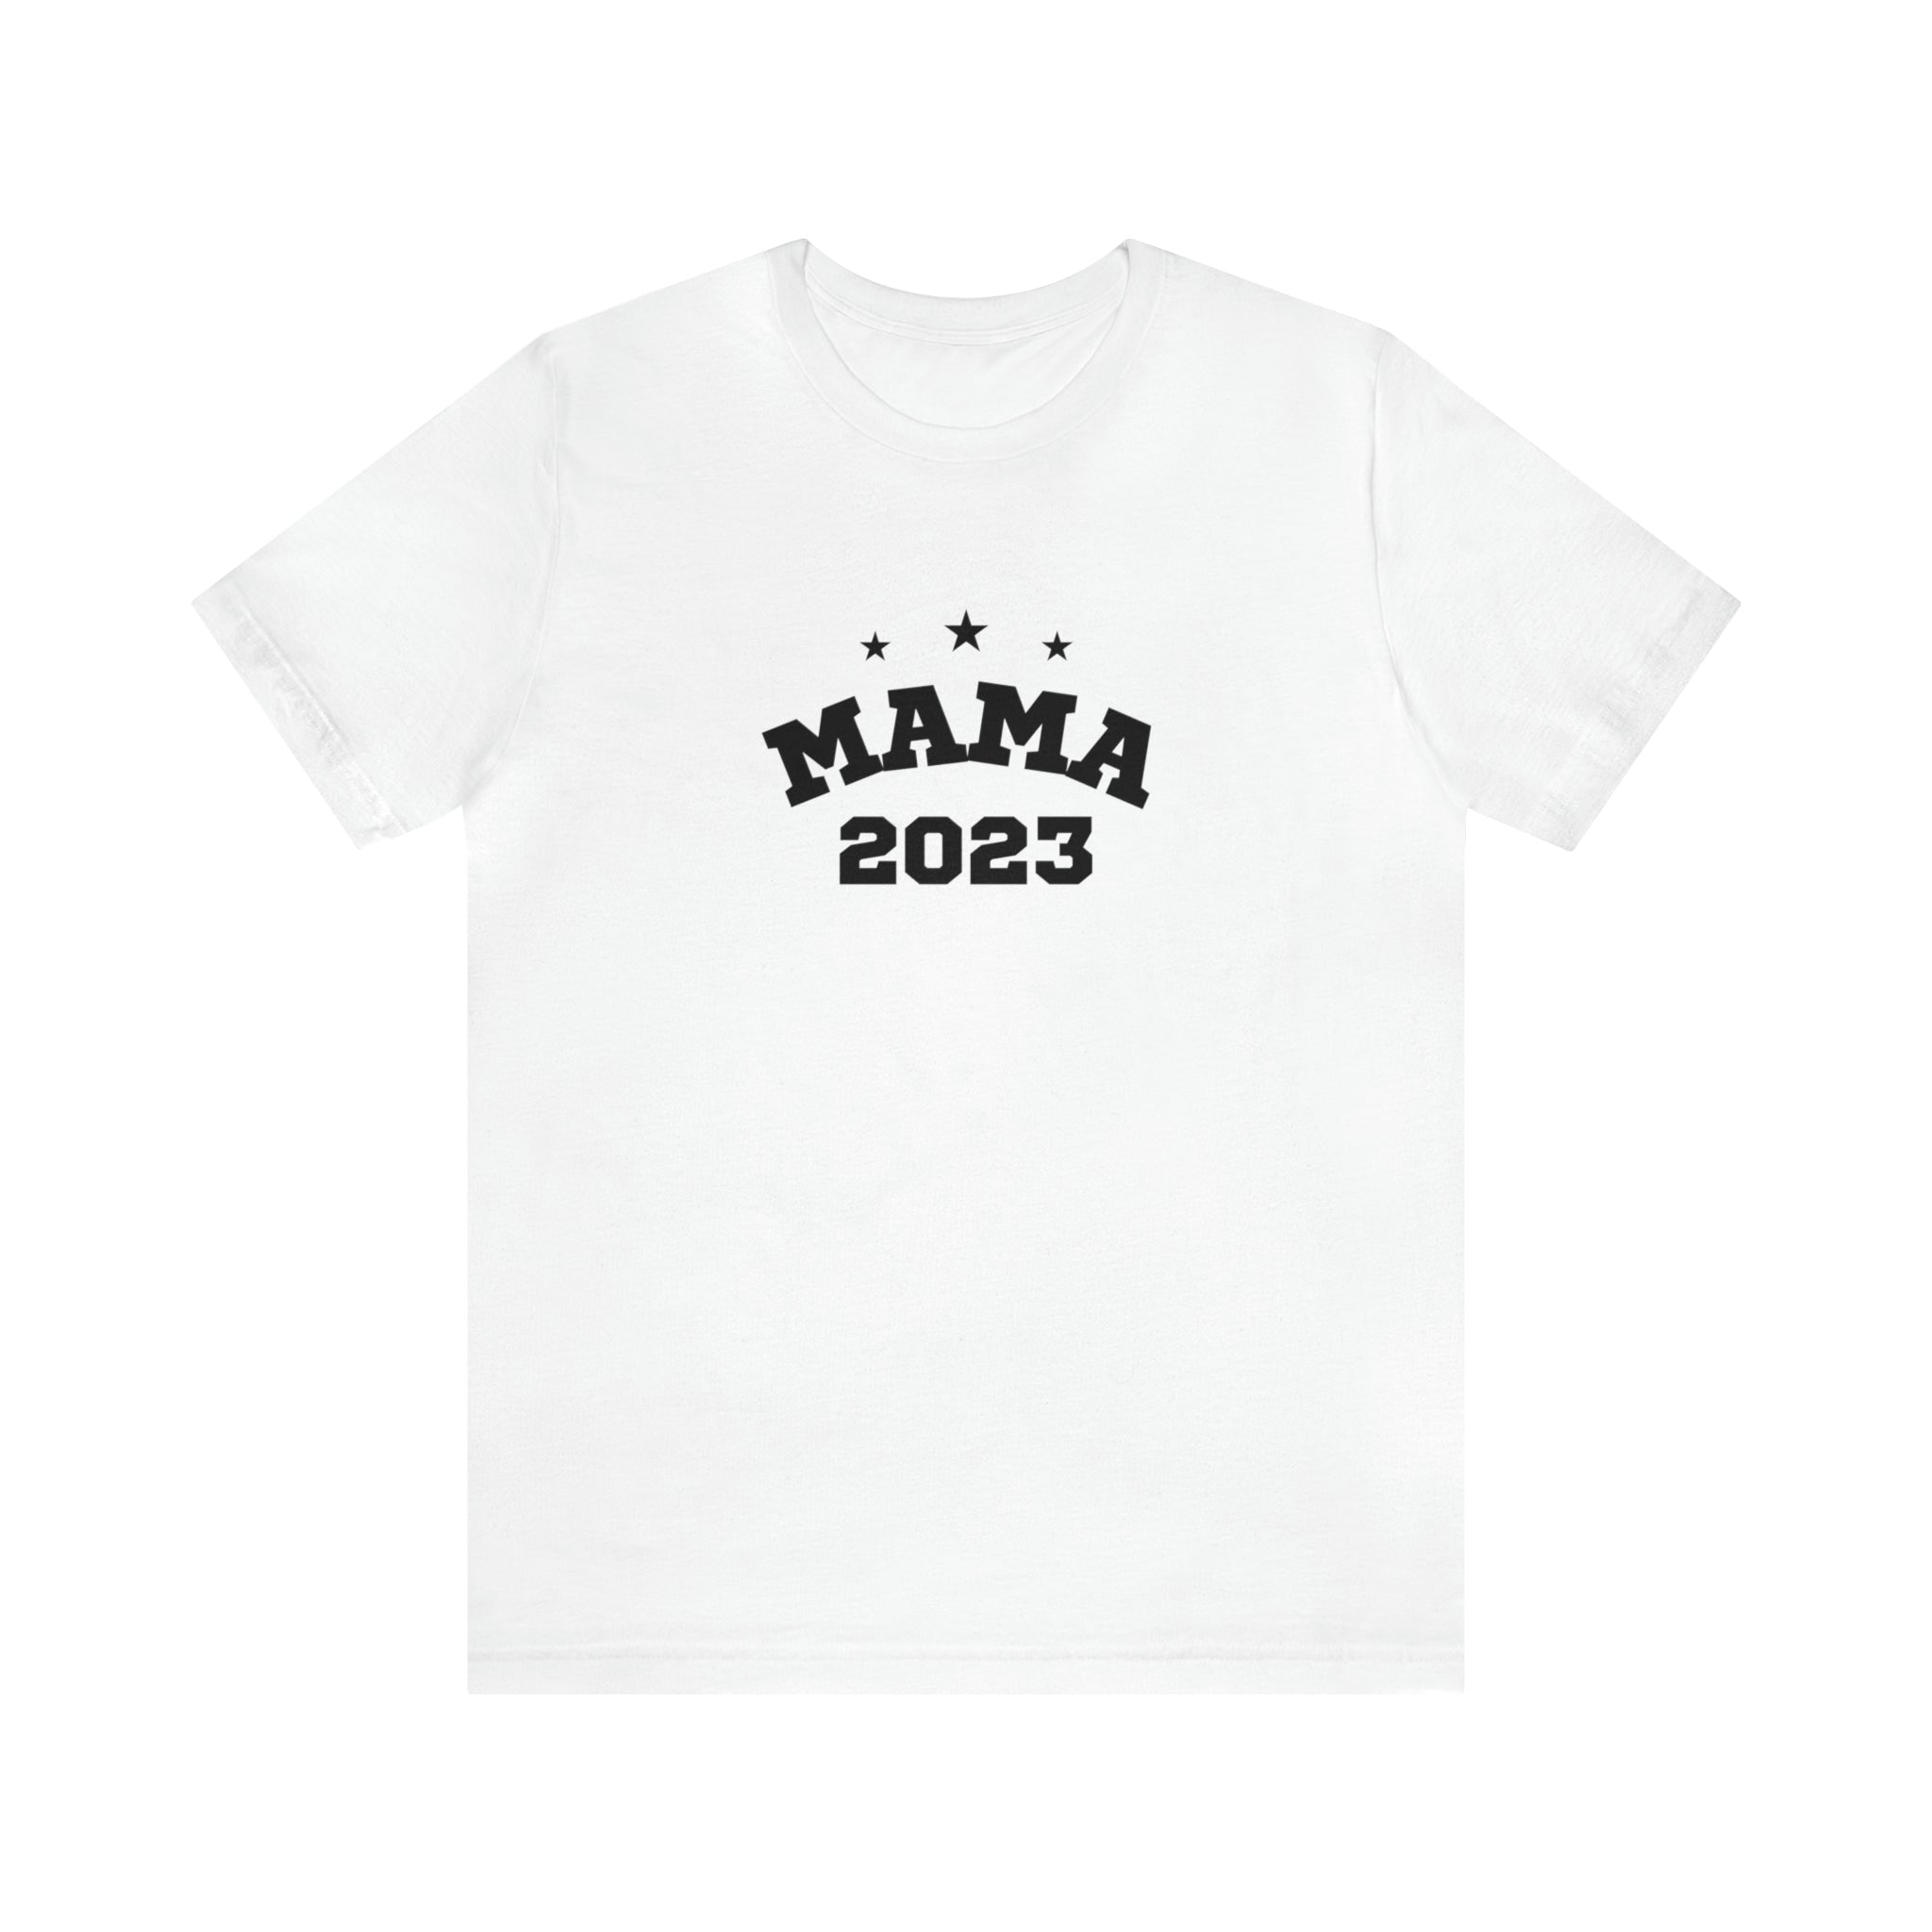 Mama 2023 Women T-shirt